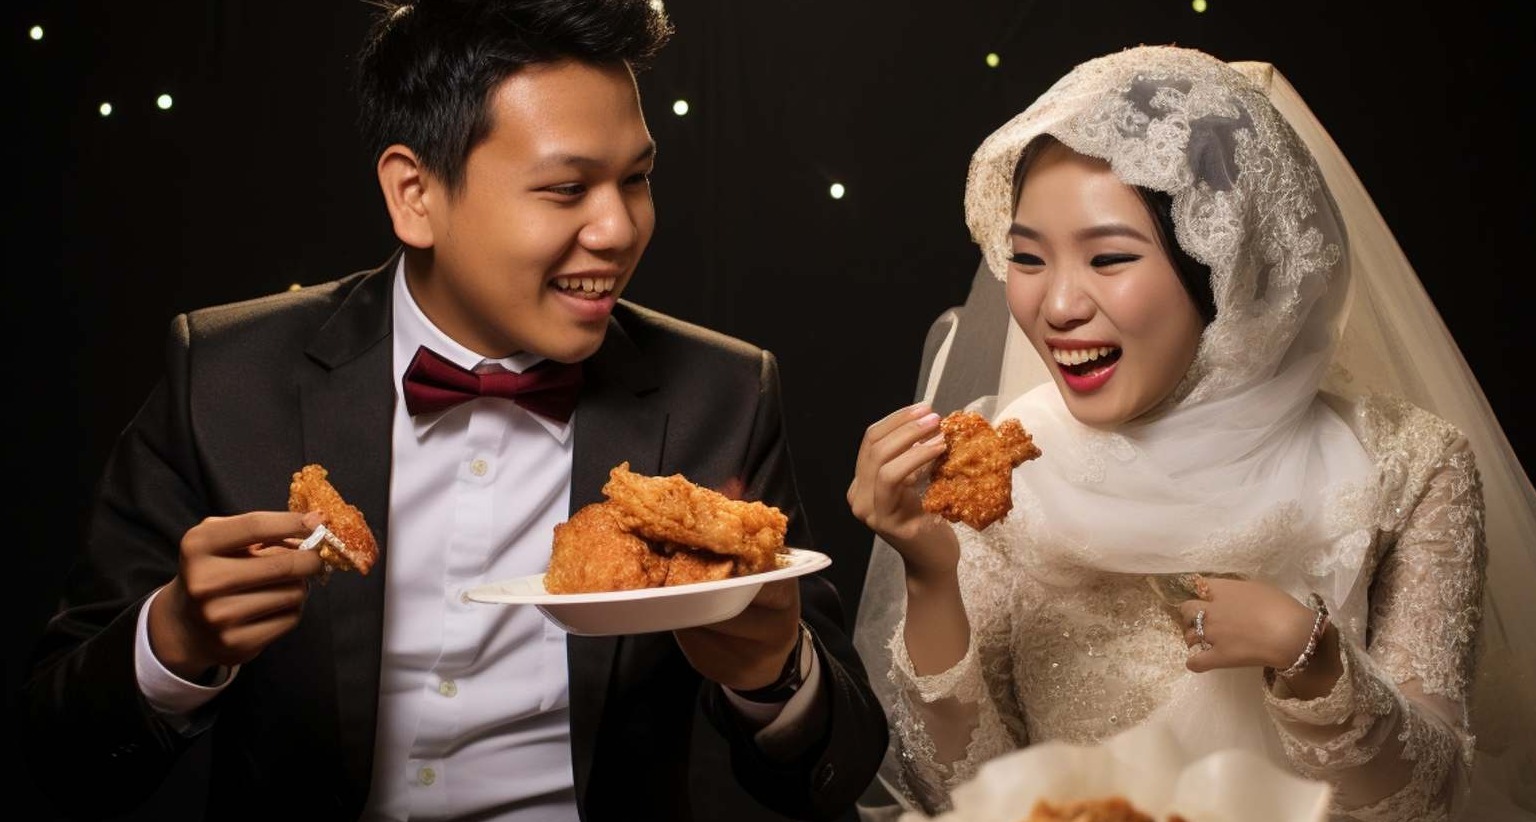 McDonald's Indonesia ofrece un menú para bodas que incluye 100 hamburguesas y 100 paquetes de nuggets